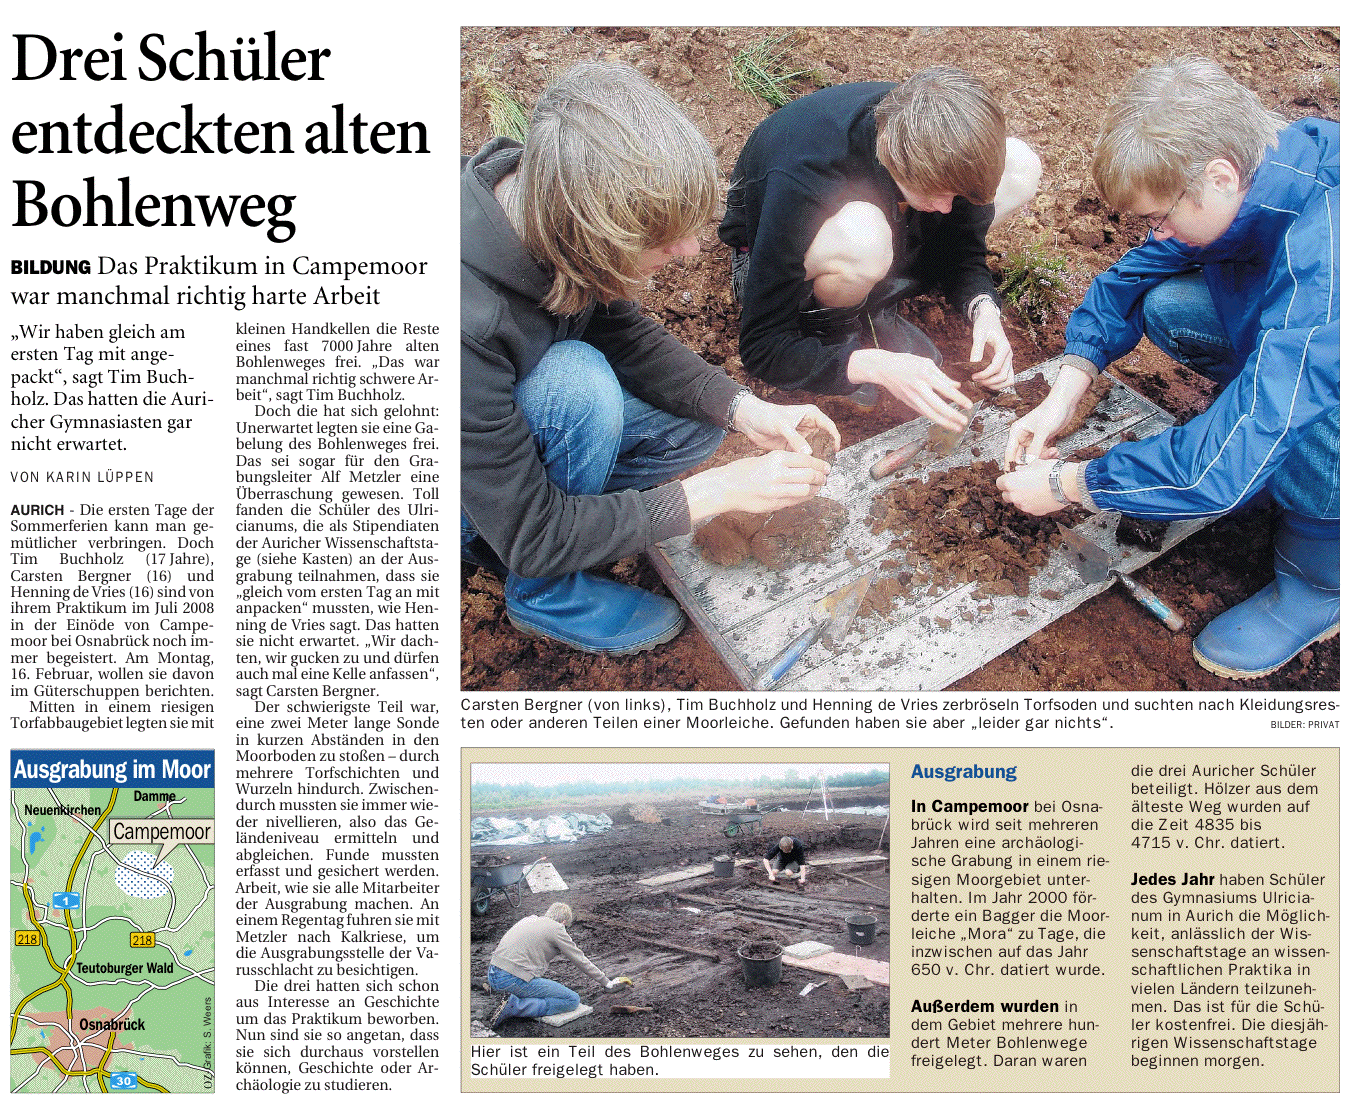 Artikel der Ostfriesen-Zeitung vom 29.01.2009 über ein Praktikum dreier Stipendiaten in Campemoor, 838 k